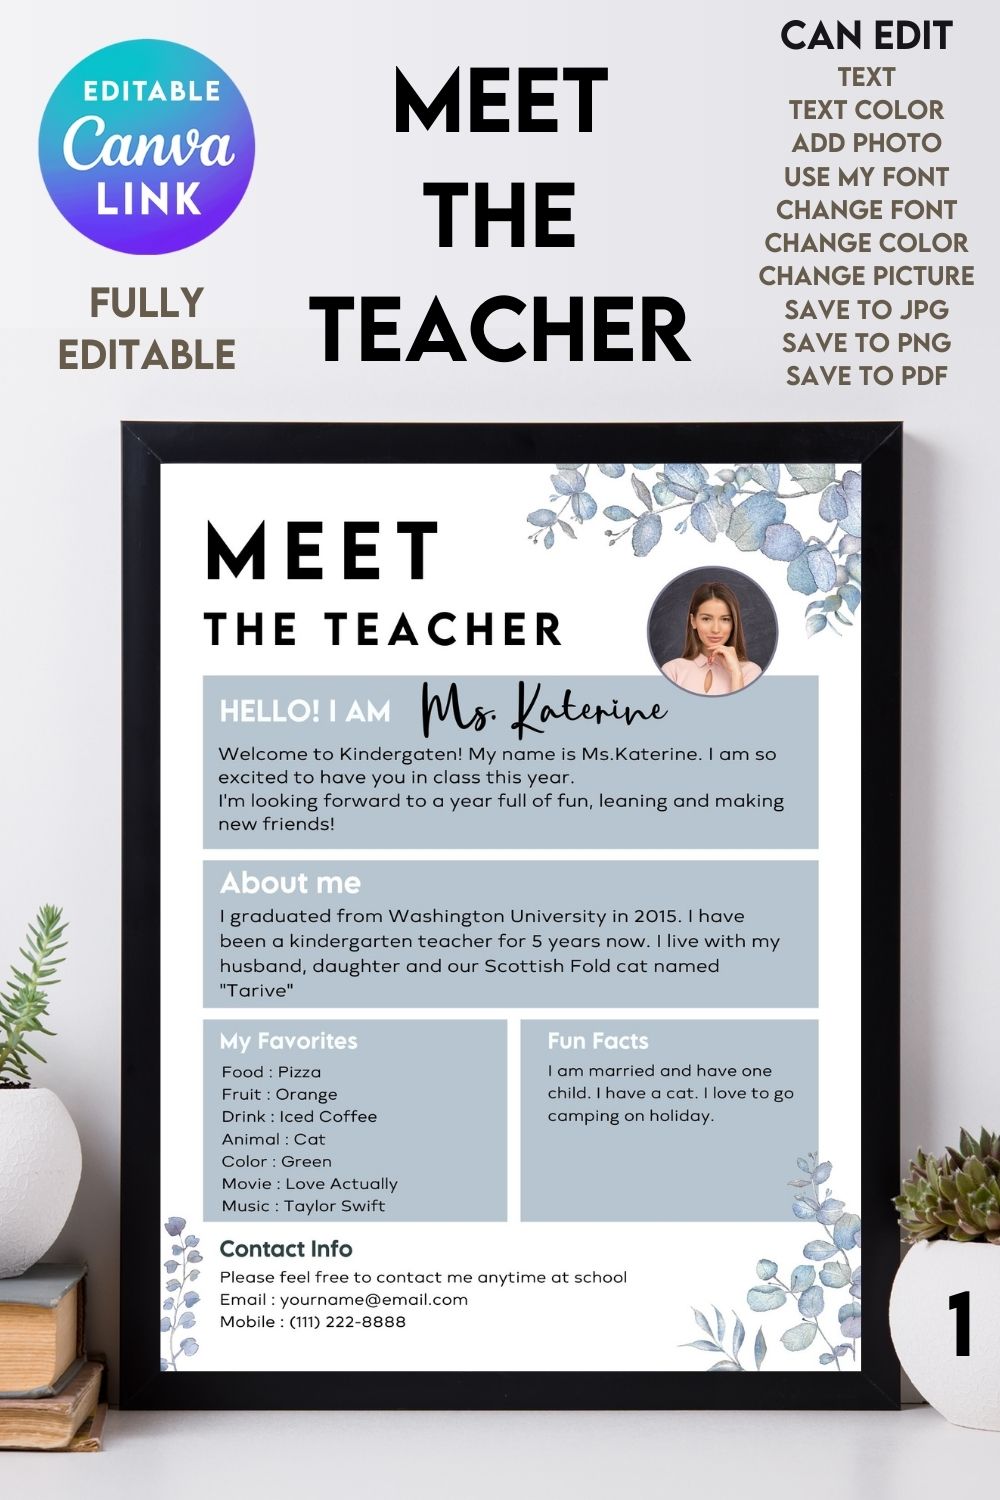 Meet the Teacher#1 - Canva Template pinterest preview image.